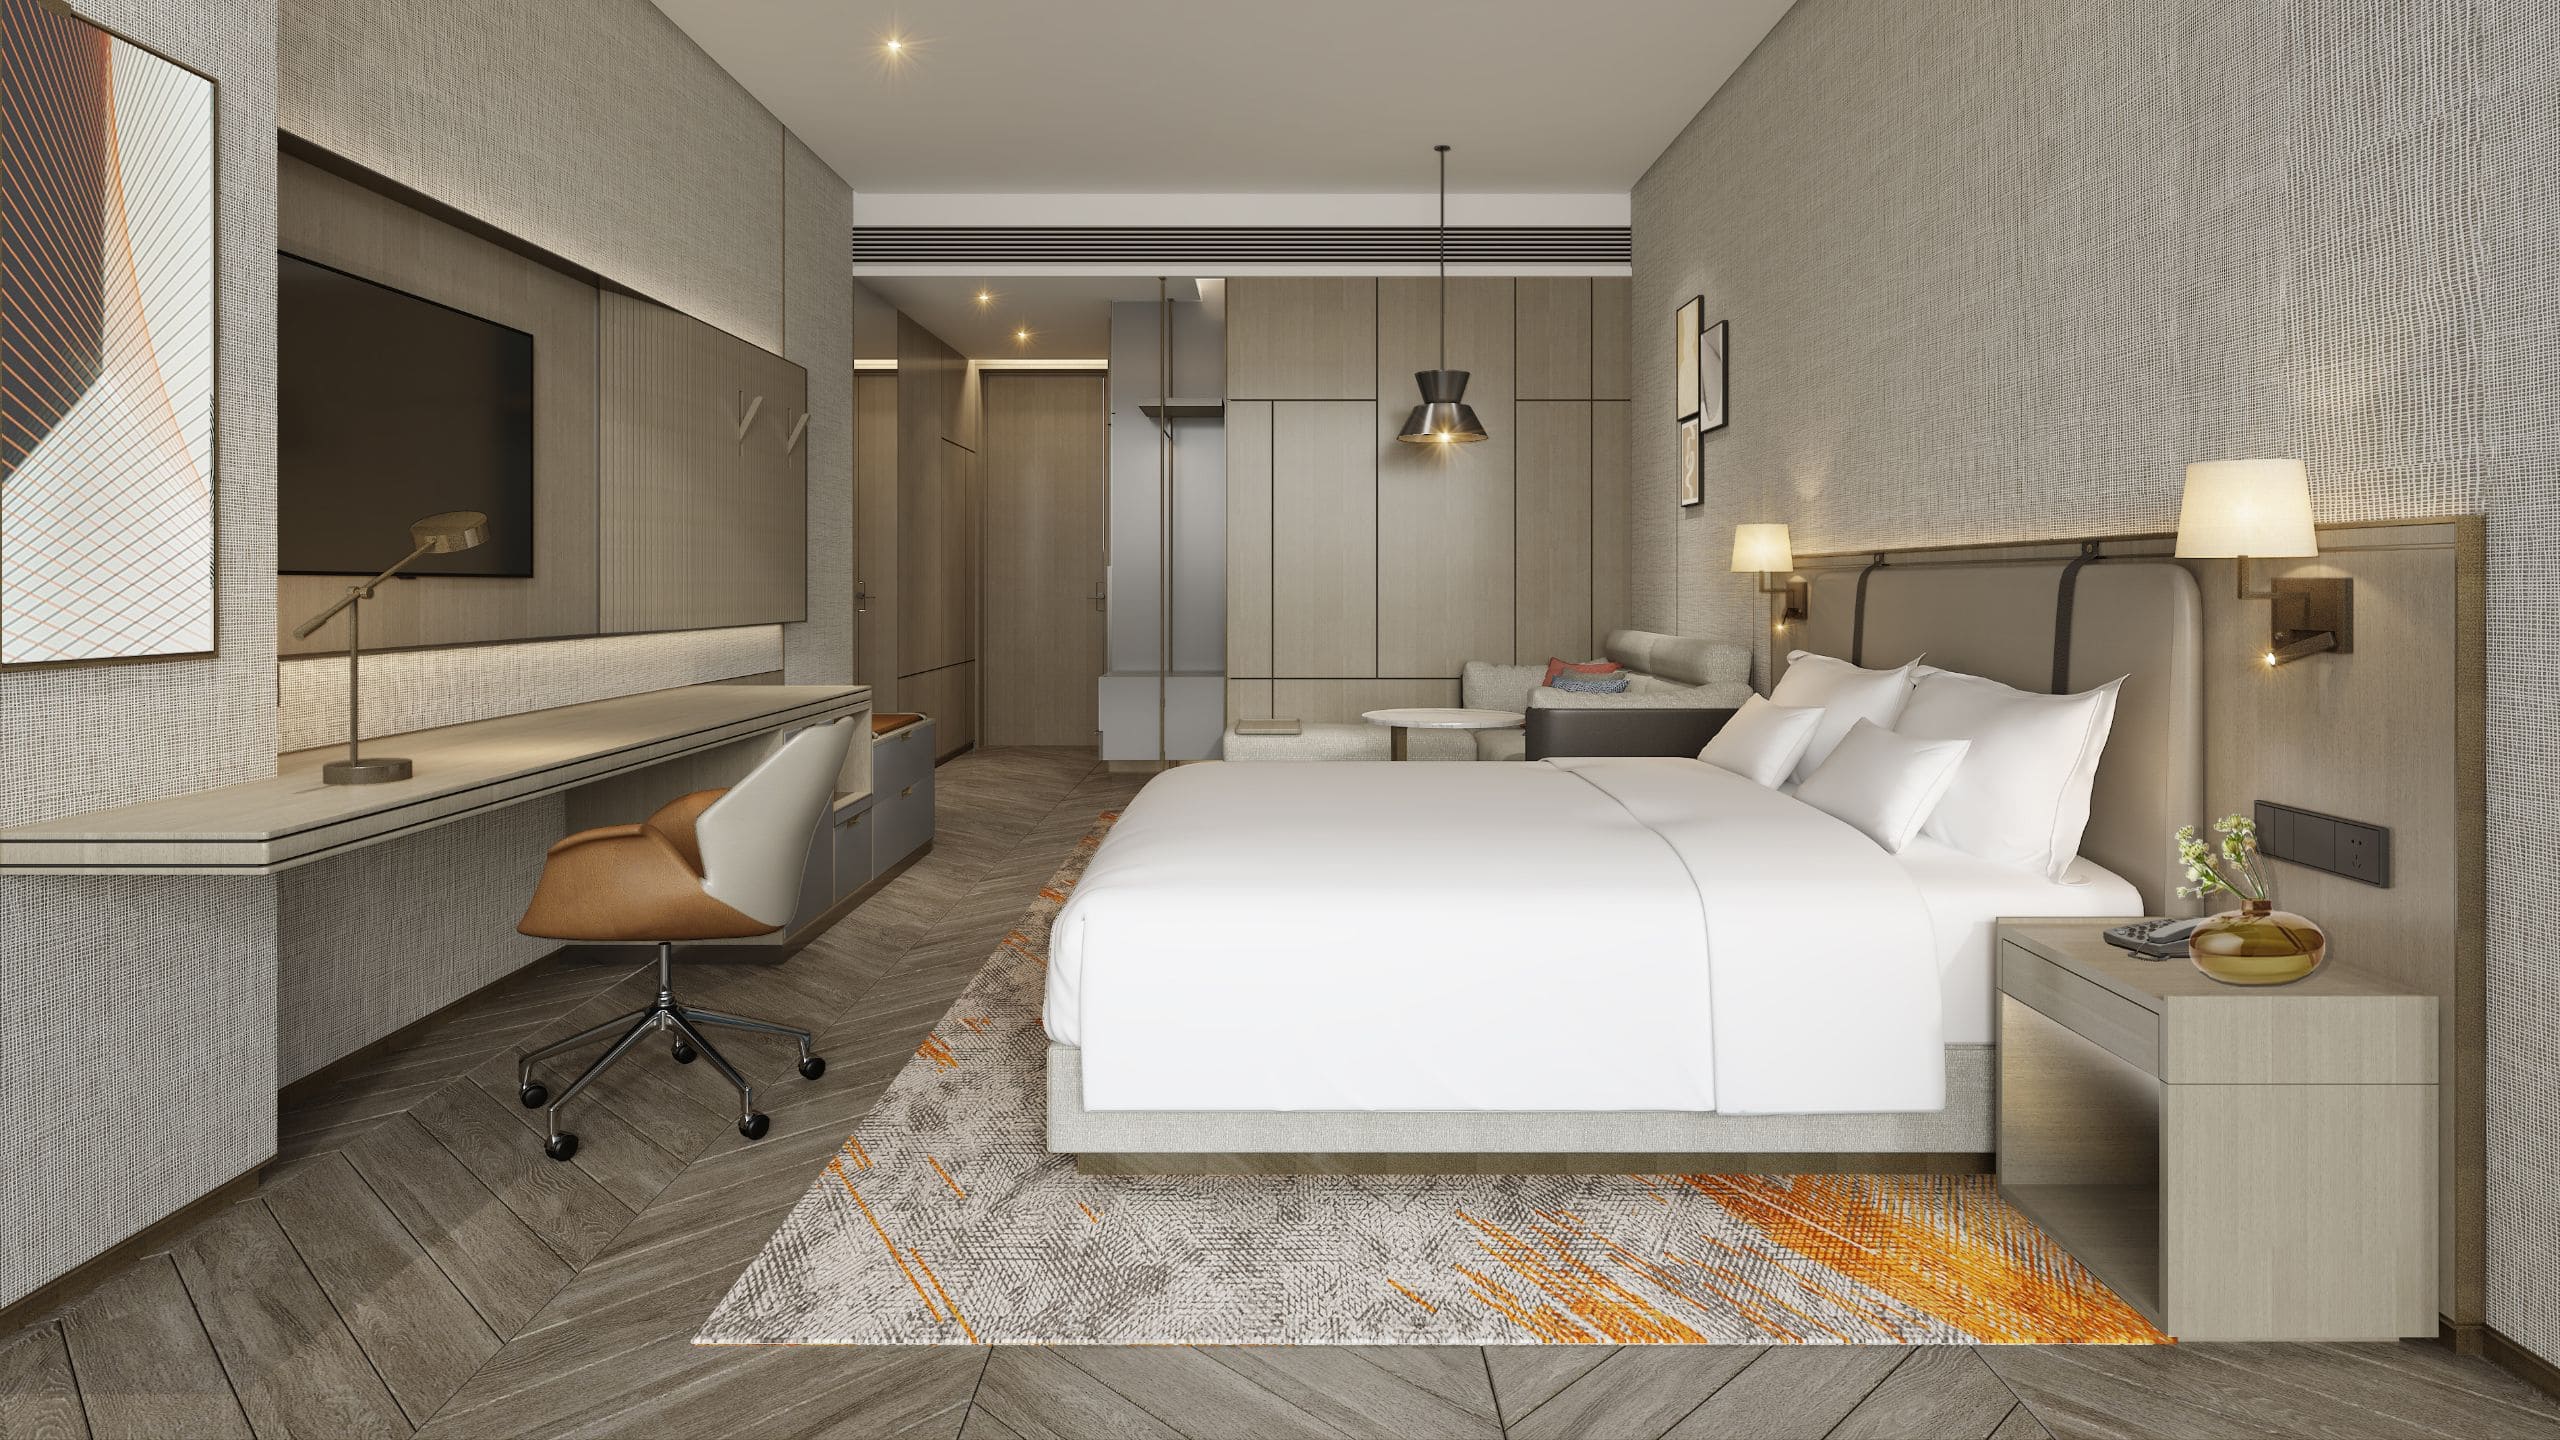 酒店房间装饰时尚现代,配有凯悦好梦大床和舒适空间组合式沙发床,55